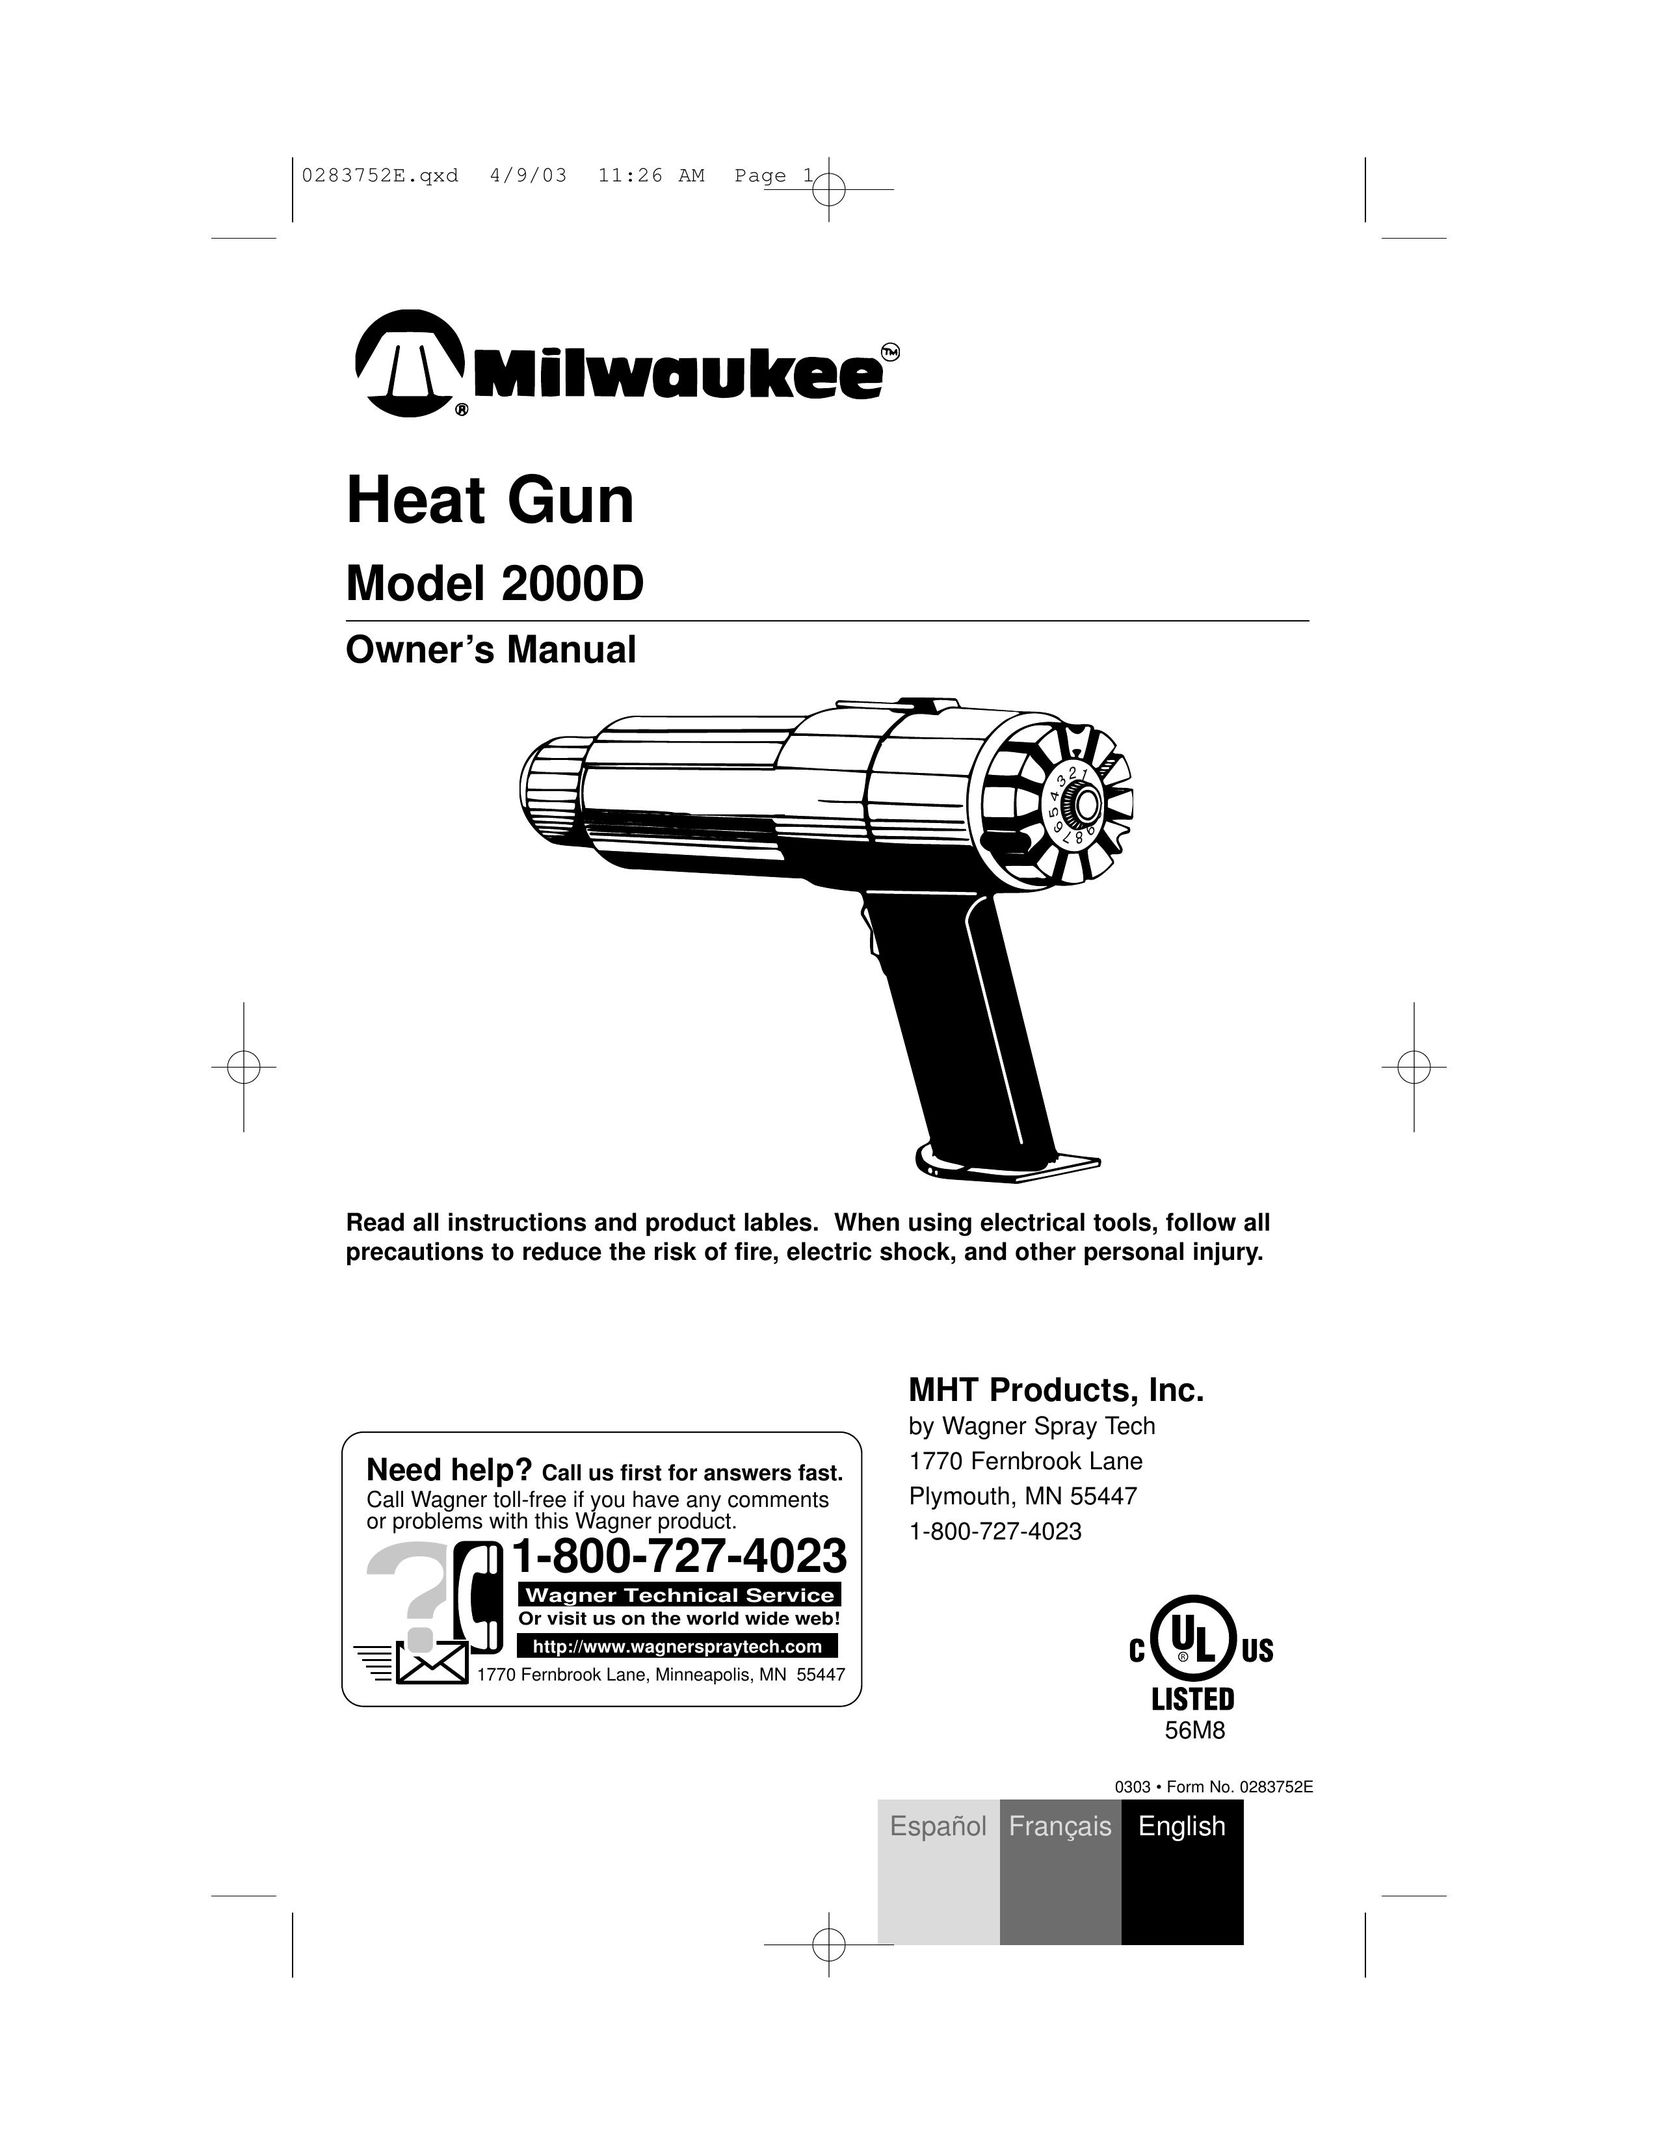 Milwaukee 2000D Heat Gun User Manual